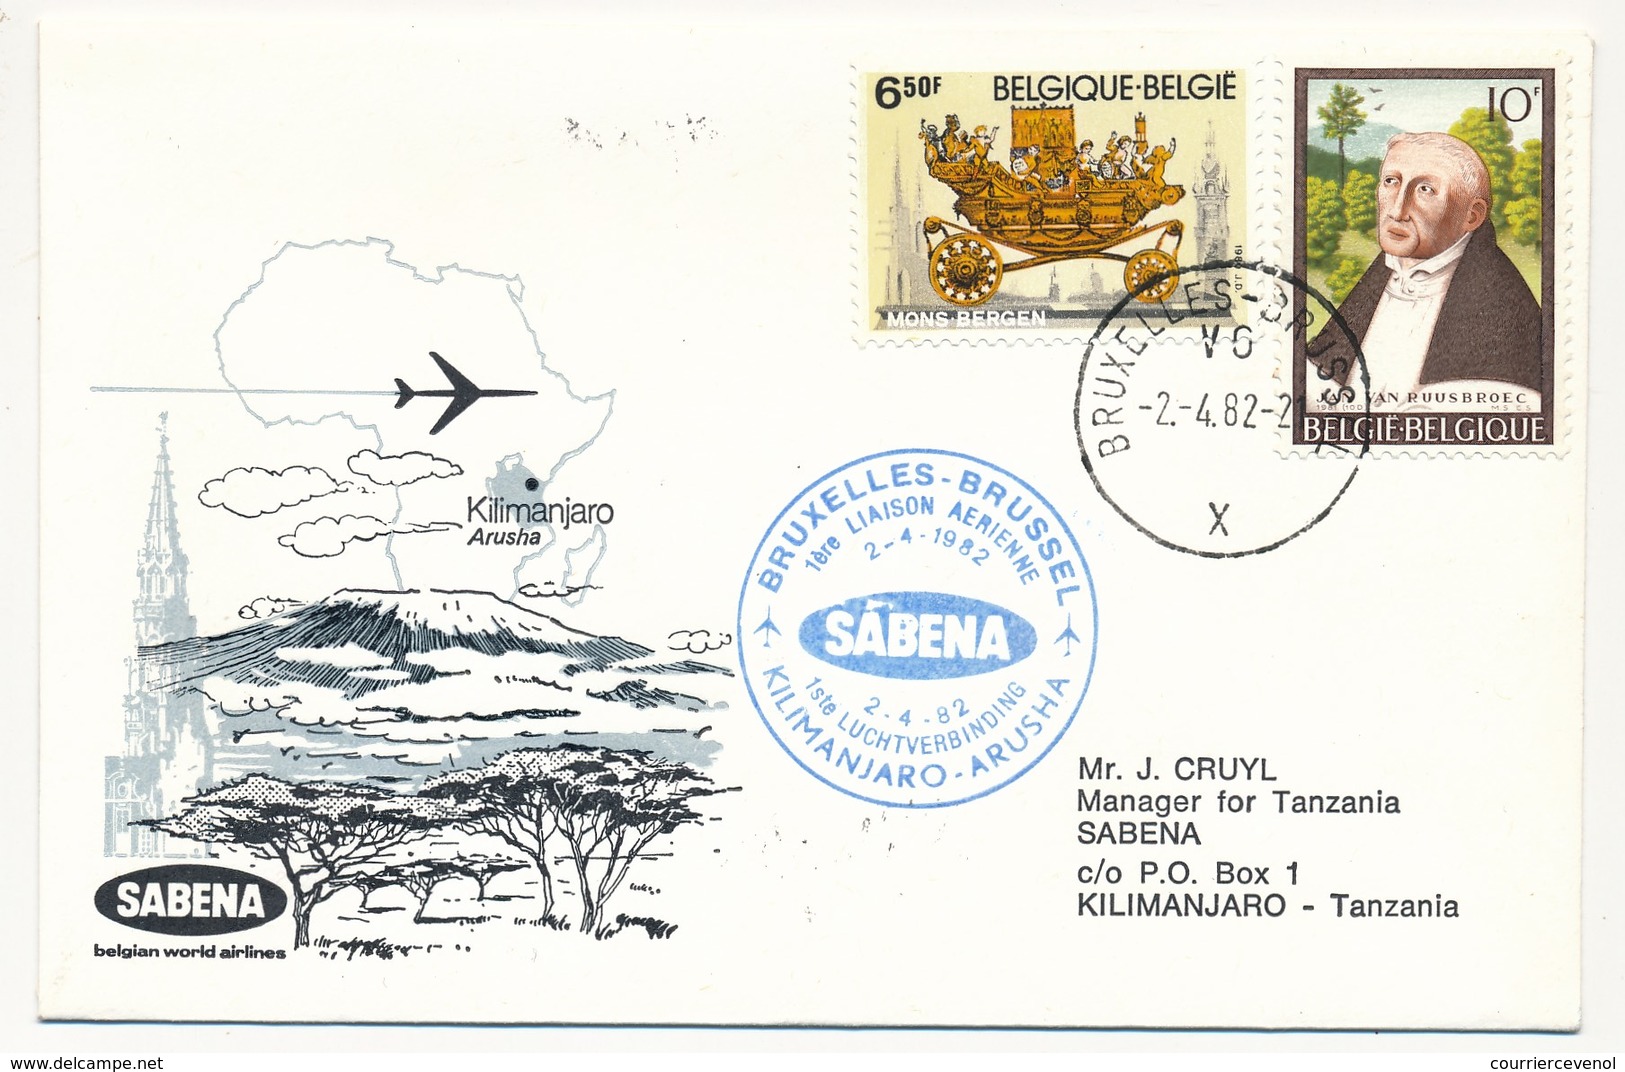 TANZANIE - 2 Enveloppes SABENA - 1ere Liaison Aérienne - KILIMANJARO - BRUXELLES - 3.4.1982 Et Aller - Tansania (1964-...)